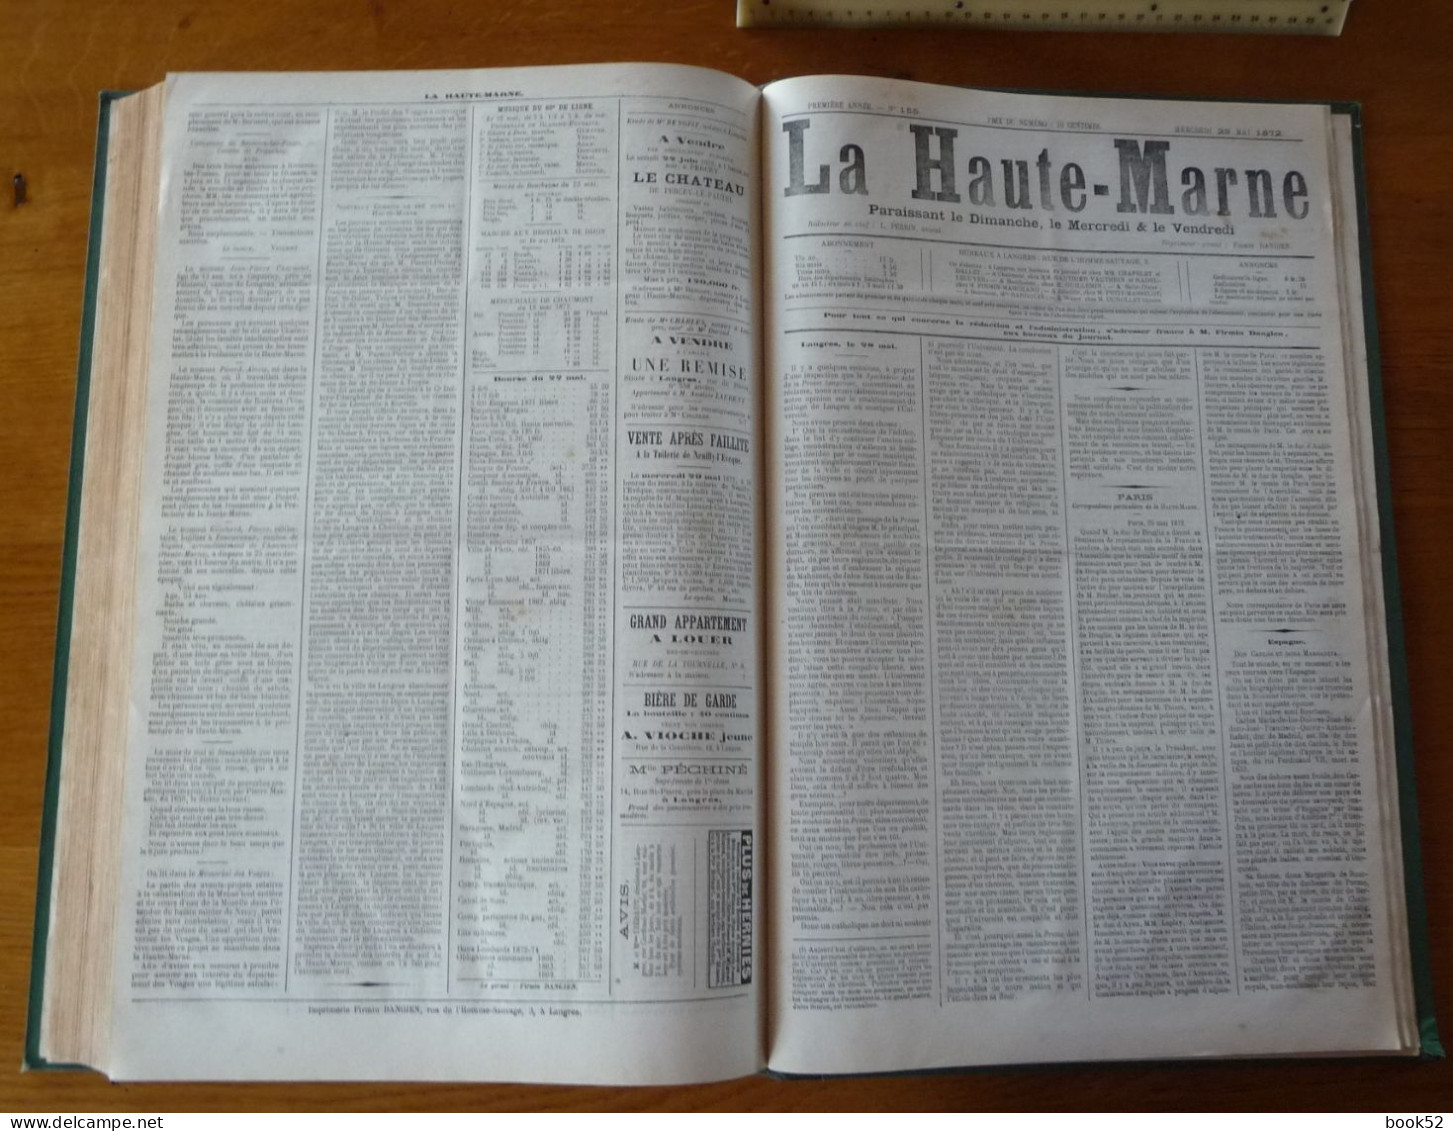 ** UNIQUE ** Le Journal LA HAUTE-MARNE - Toute la PREMIERE ANNEE 1871/72 dans Une Reliure